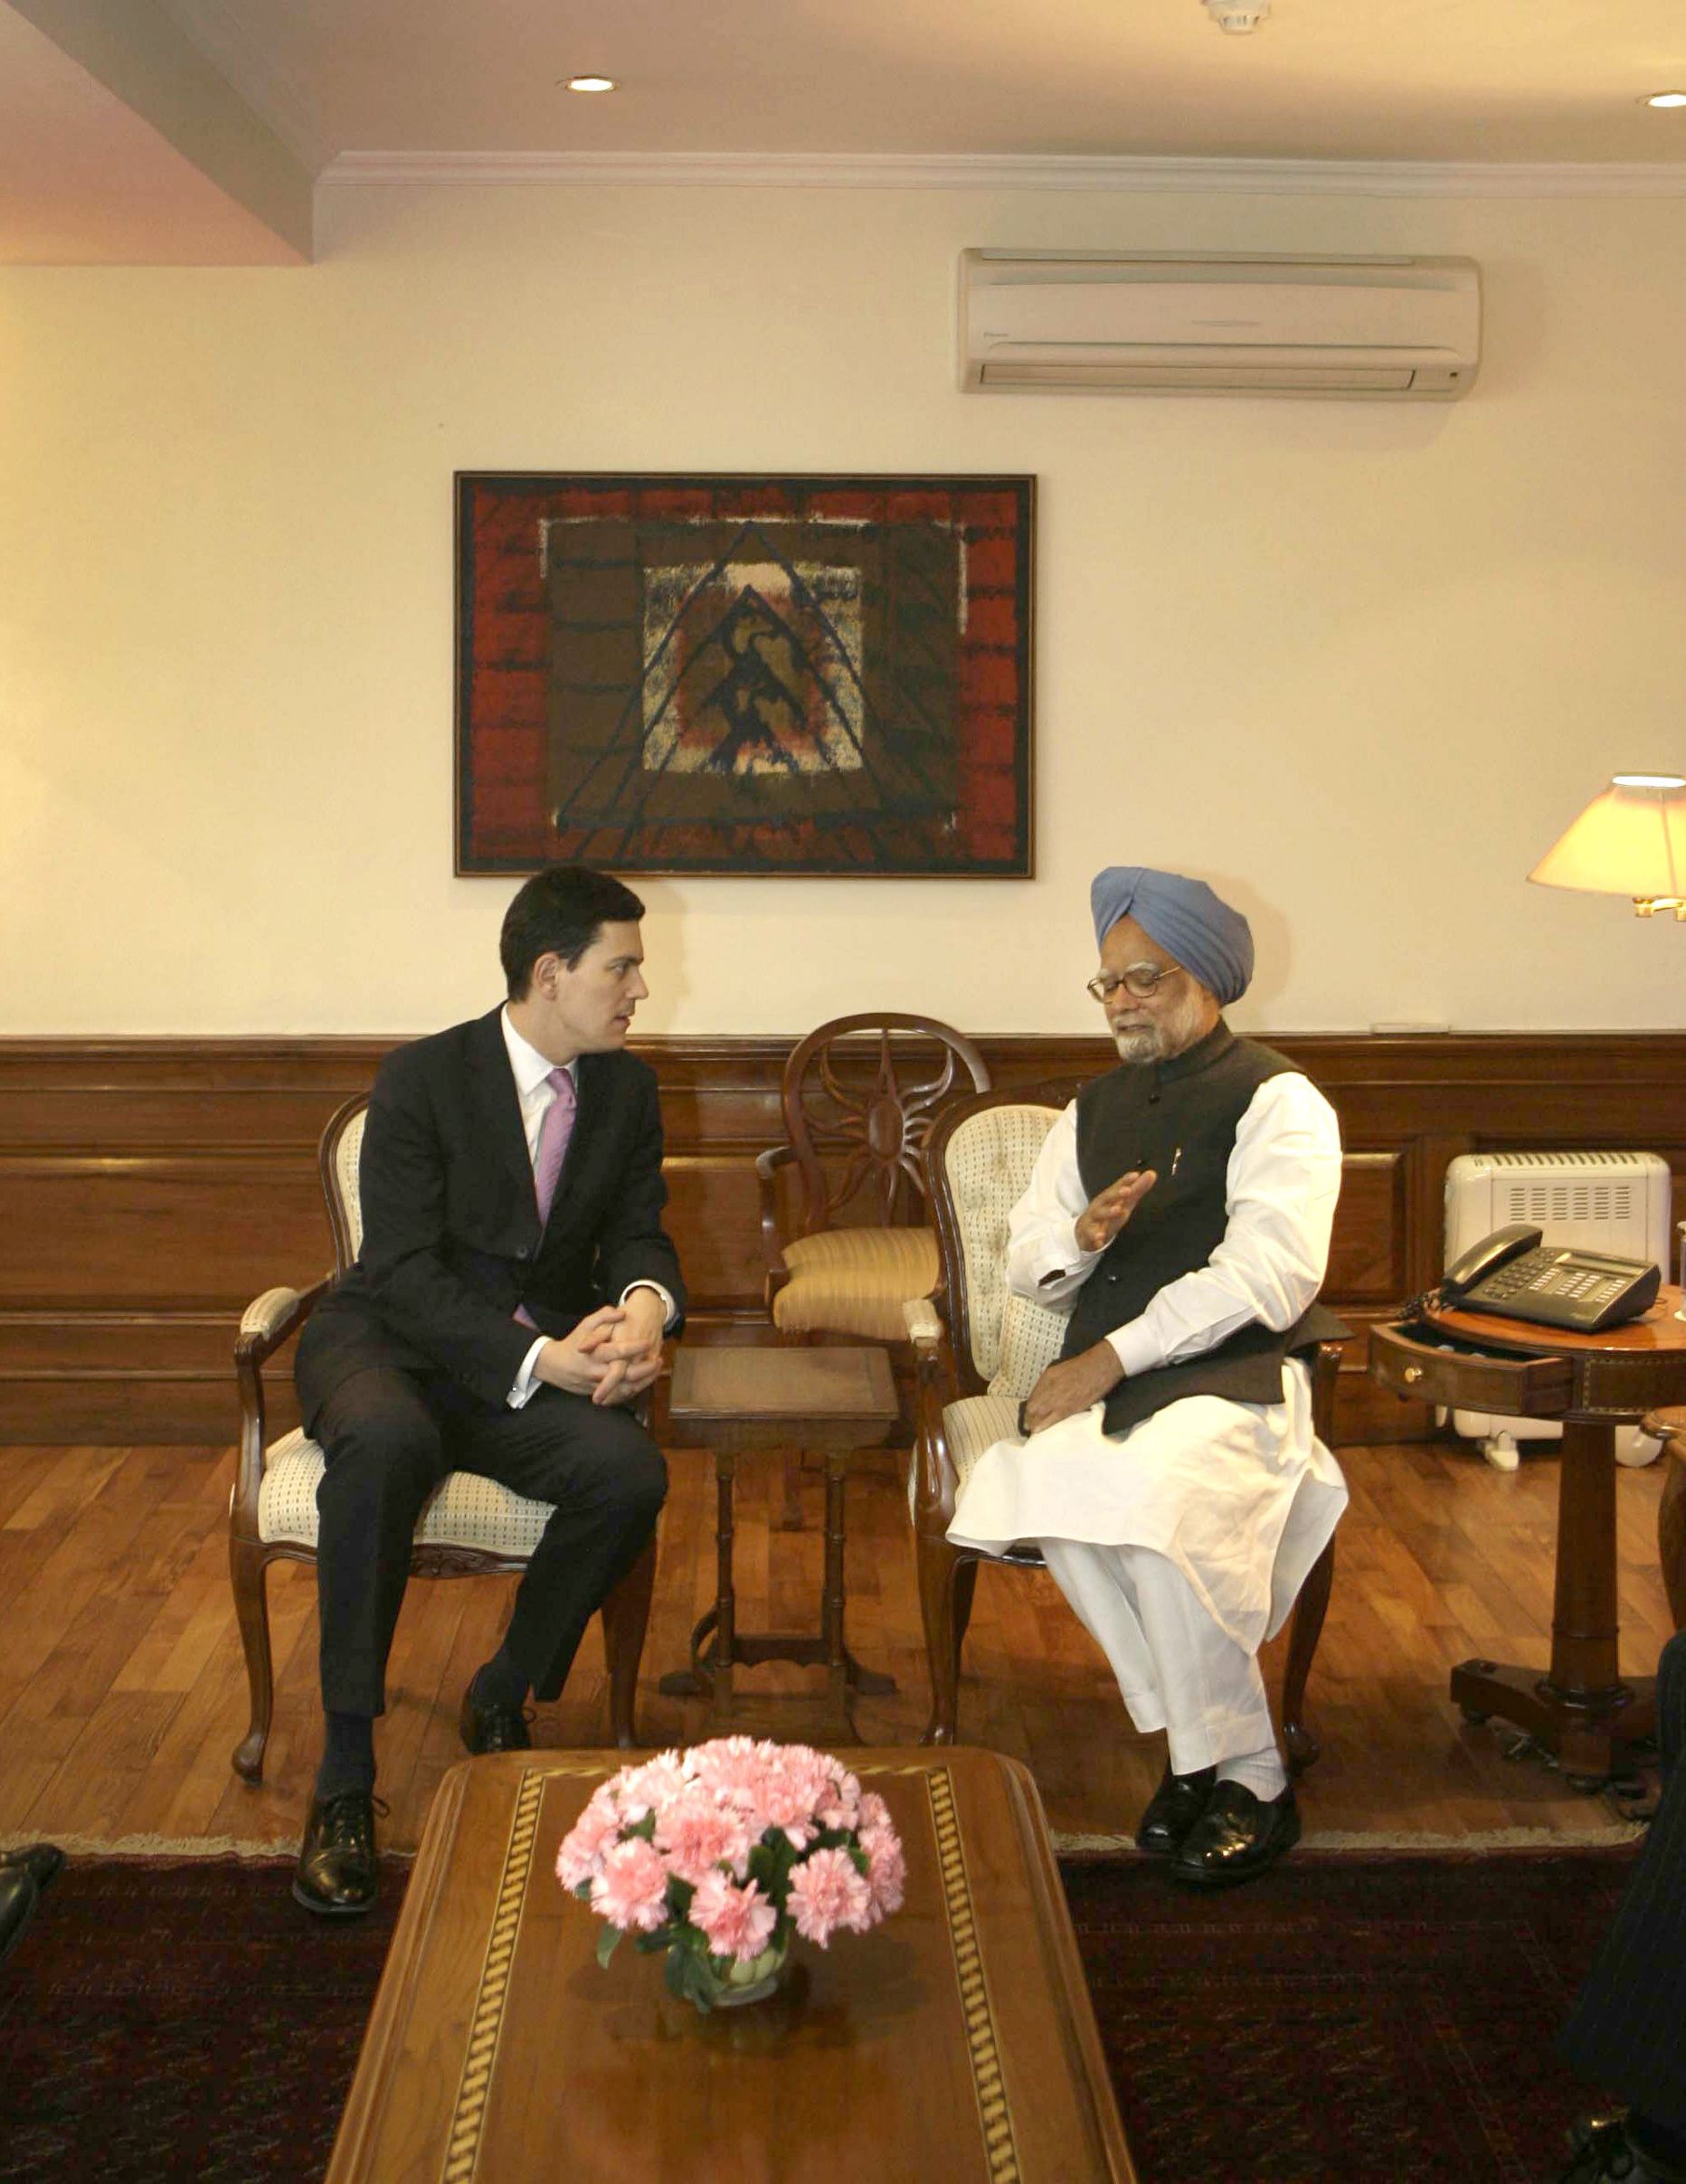 Briti välisminister David Miliband ja tema India kolleeg Pranab Mukherjee kohtumas New Delhis.